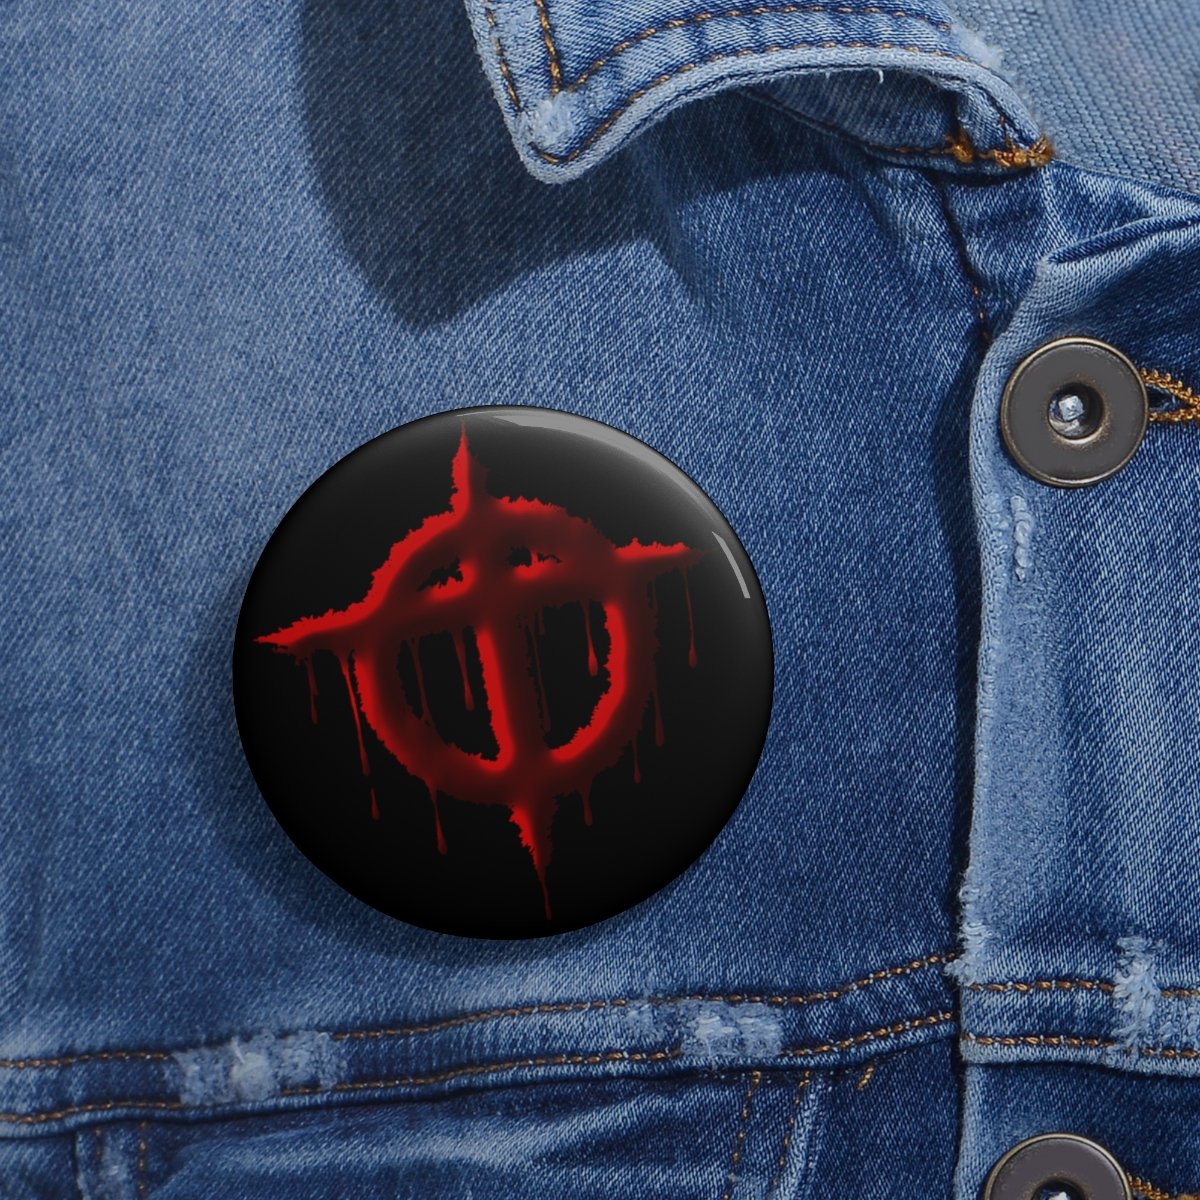 Minier – Bloody Cross Pin Buttons